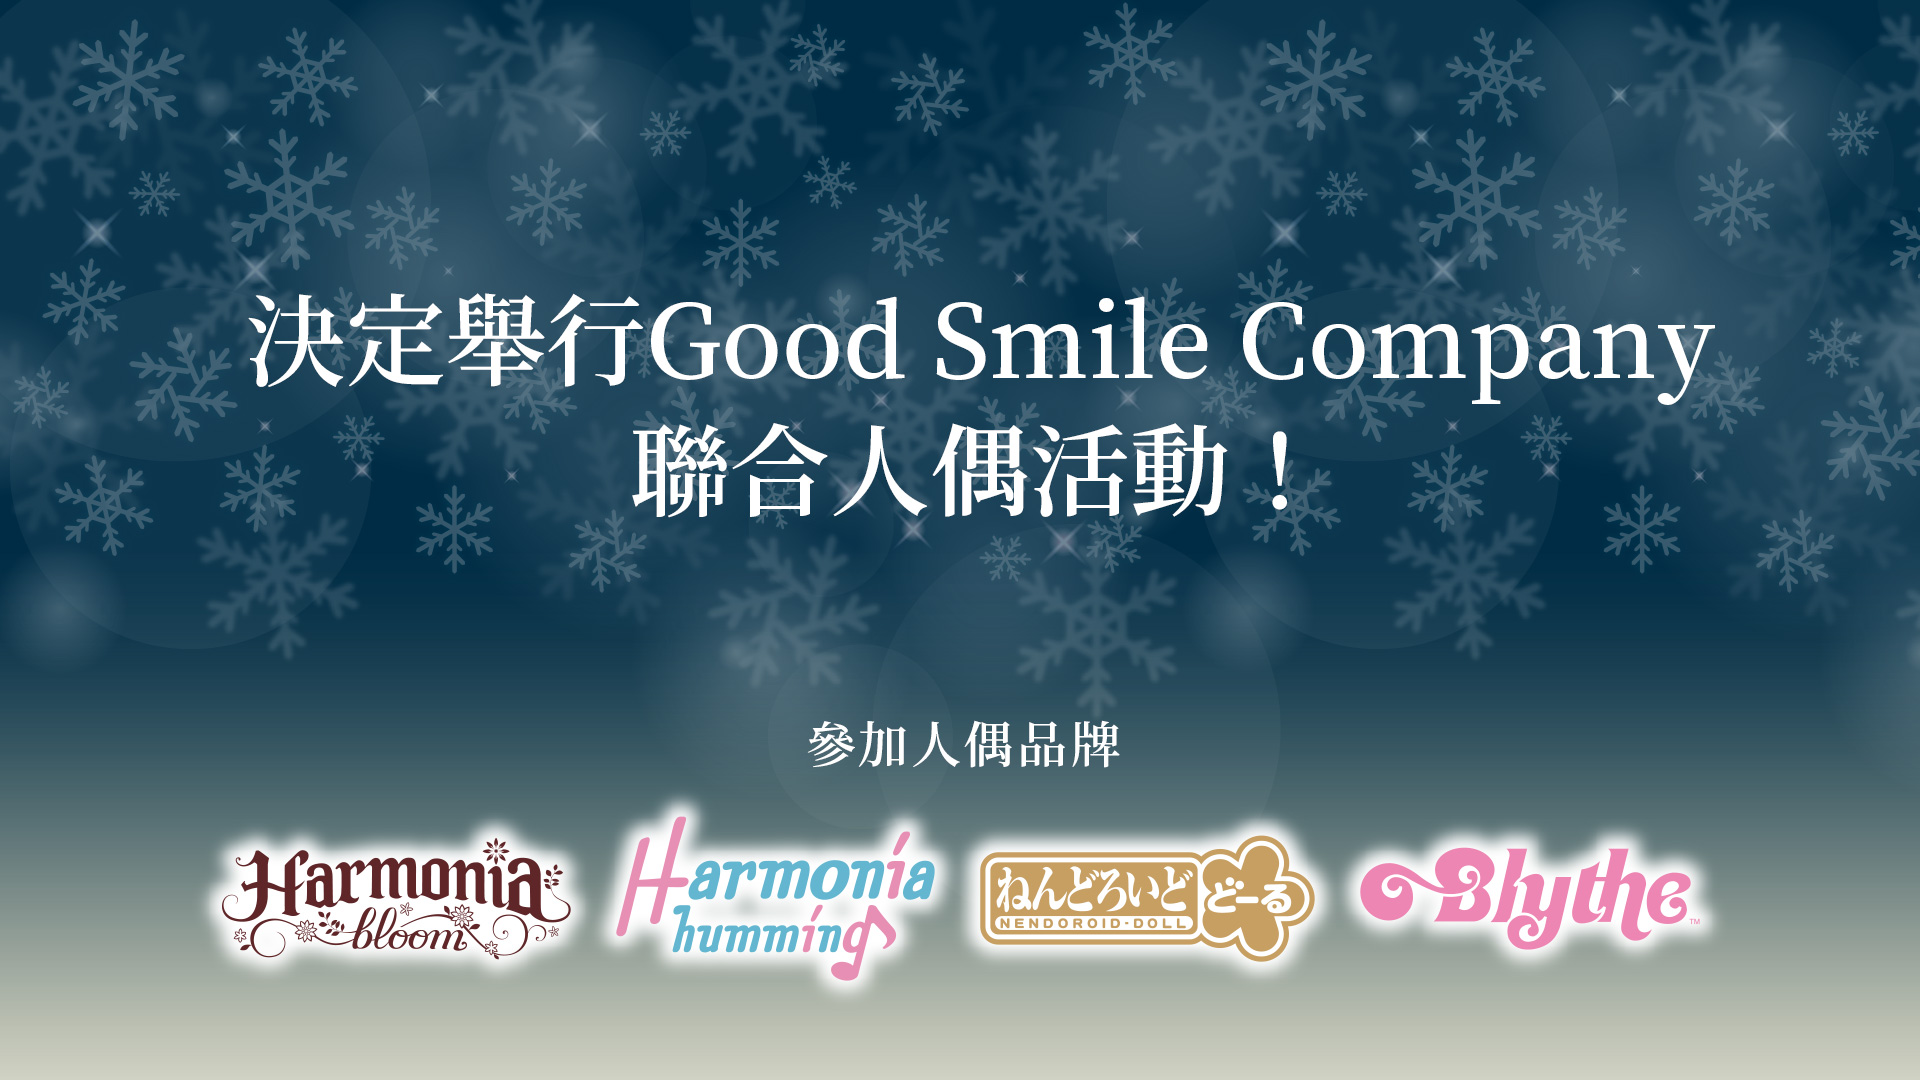 決定舉行Good Smile Company 聯合人偶活動！